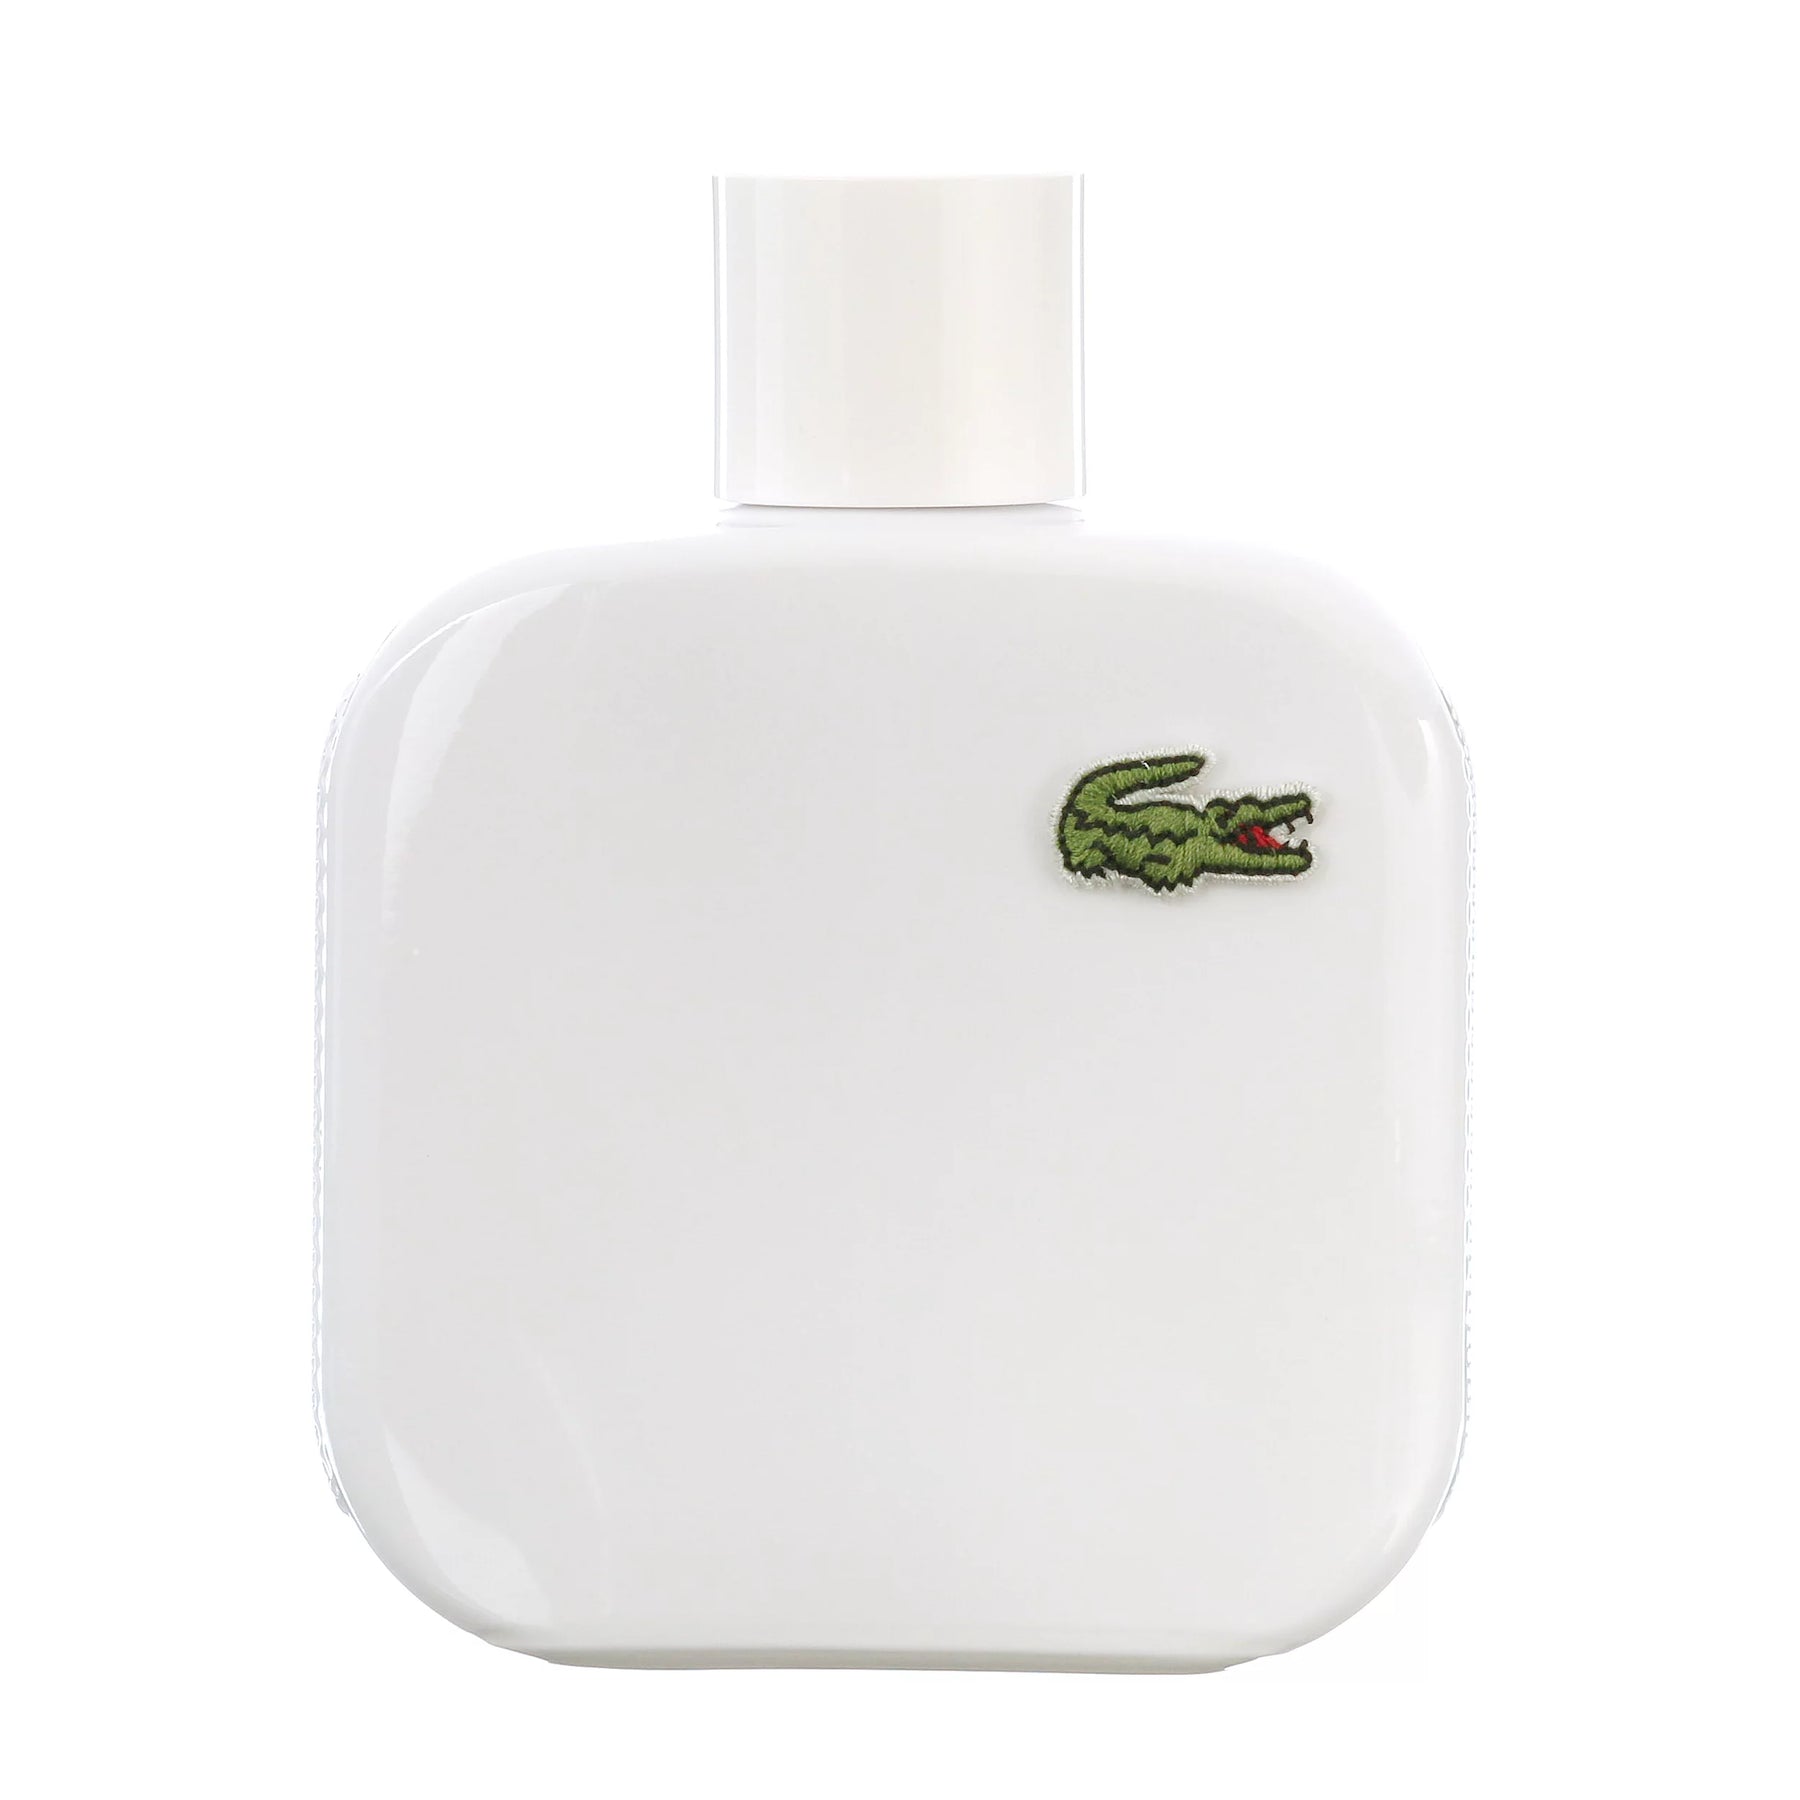 Eau Lacoste Blanc Men's Perfume/Cologne For Men Ea – Fandi Perfume